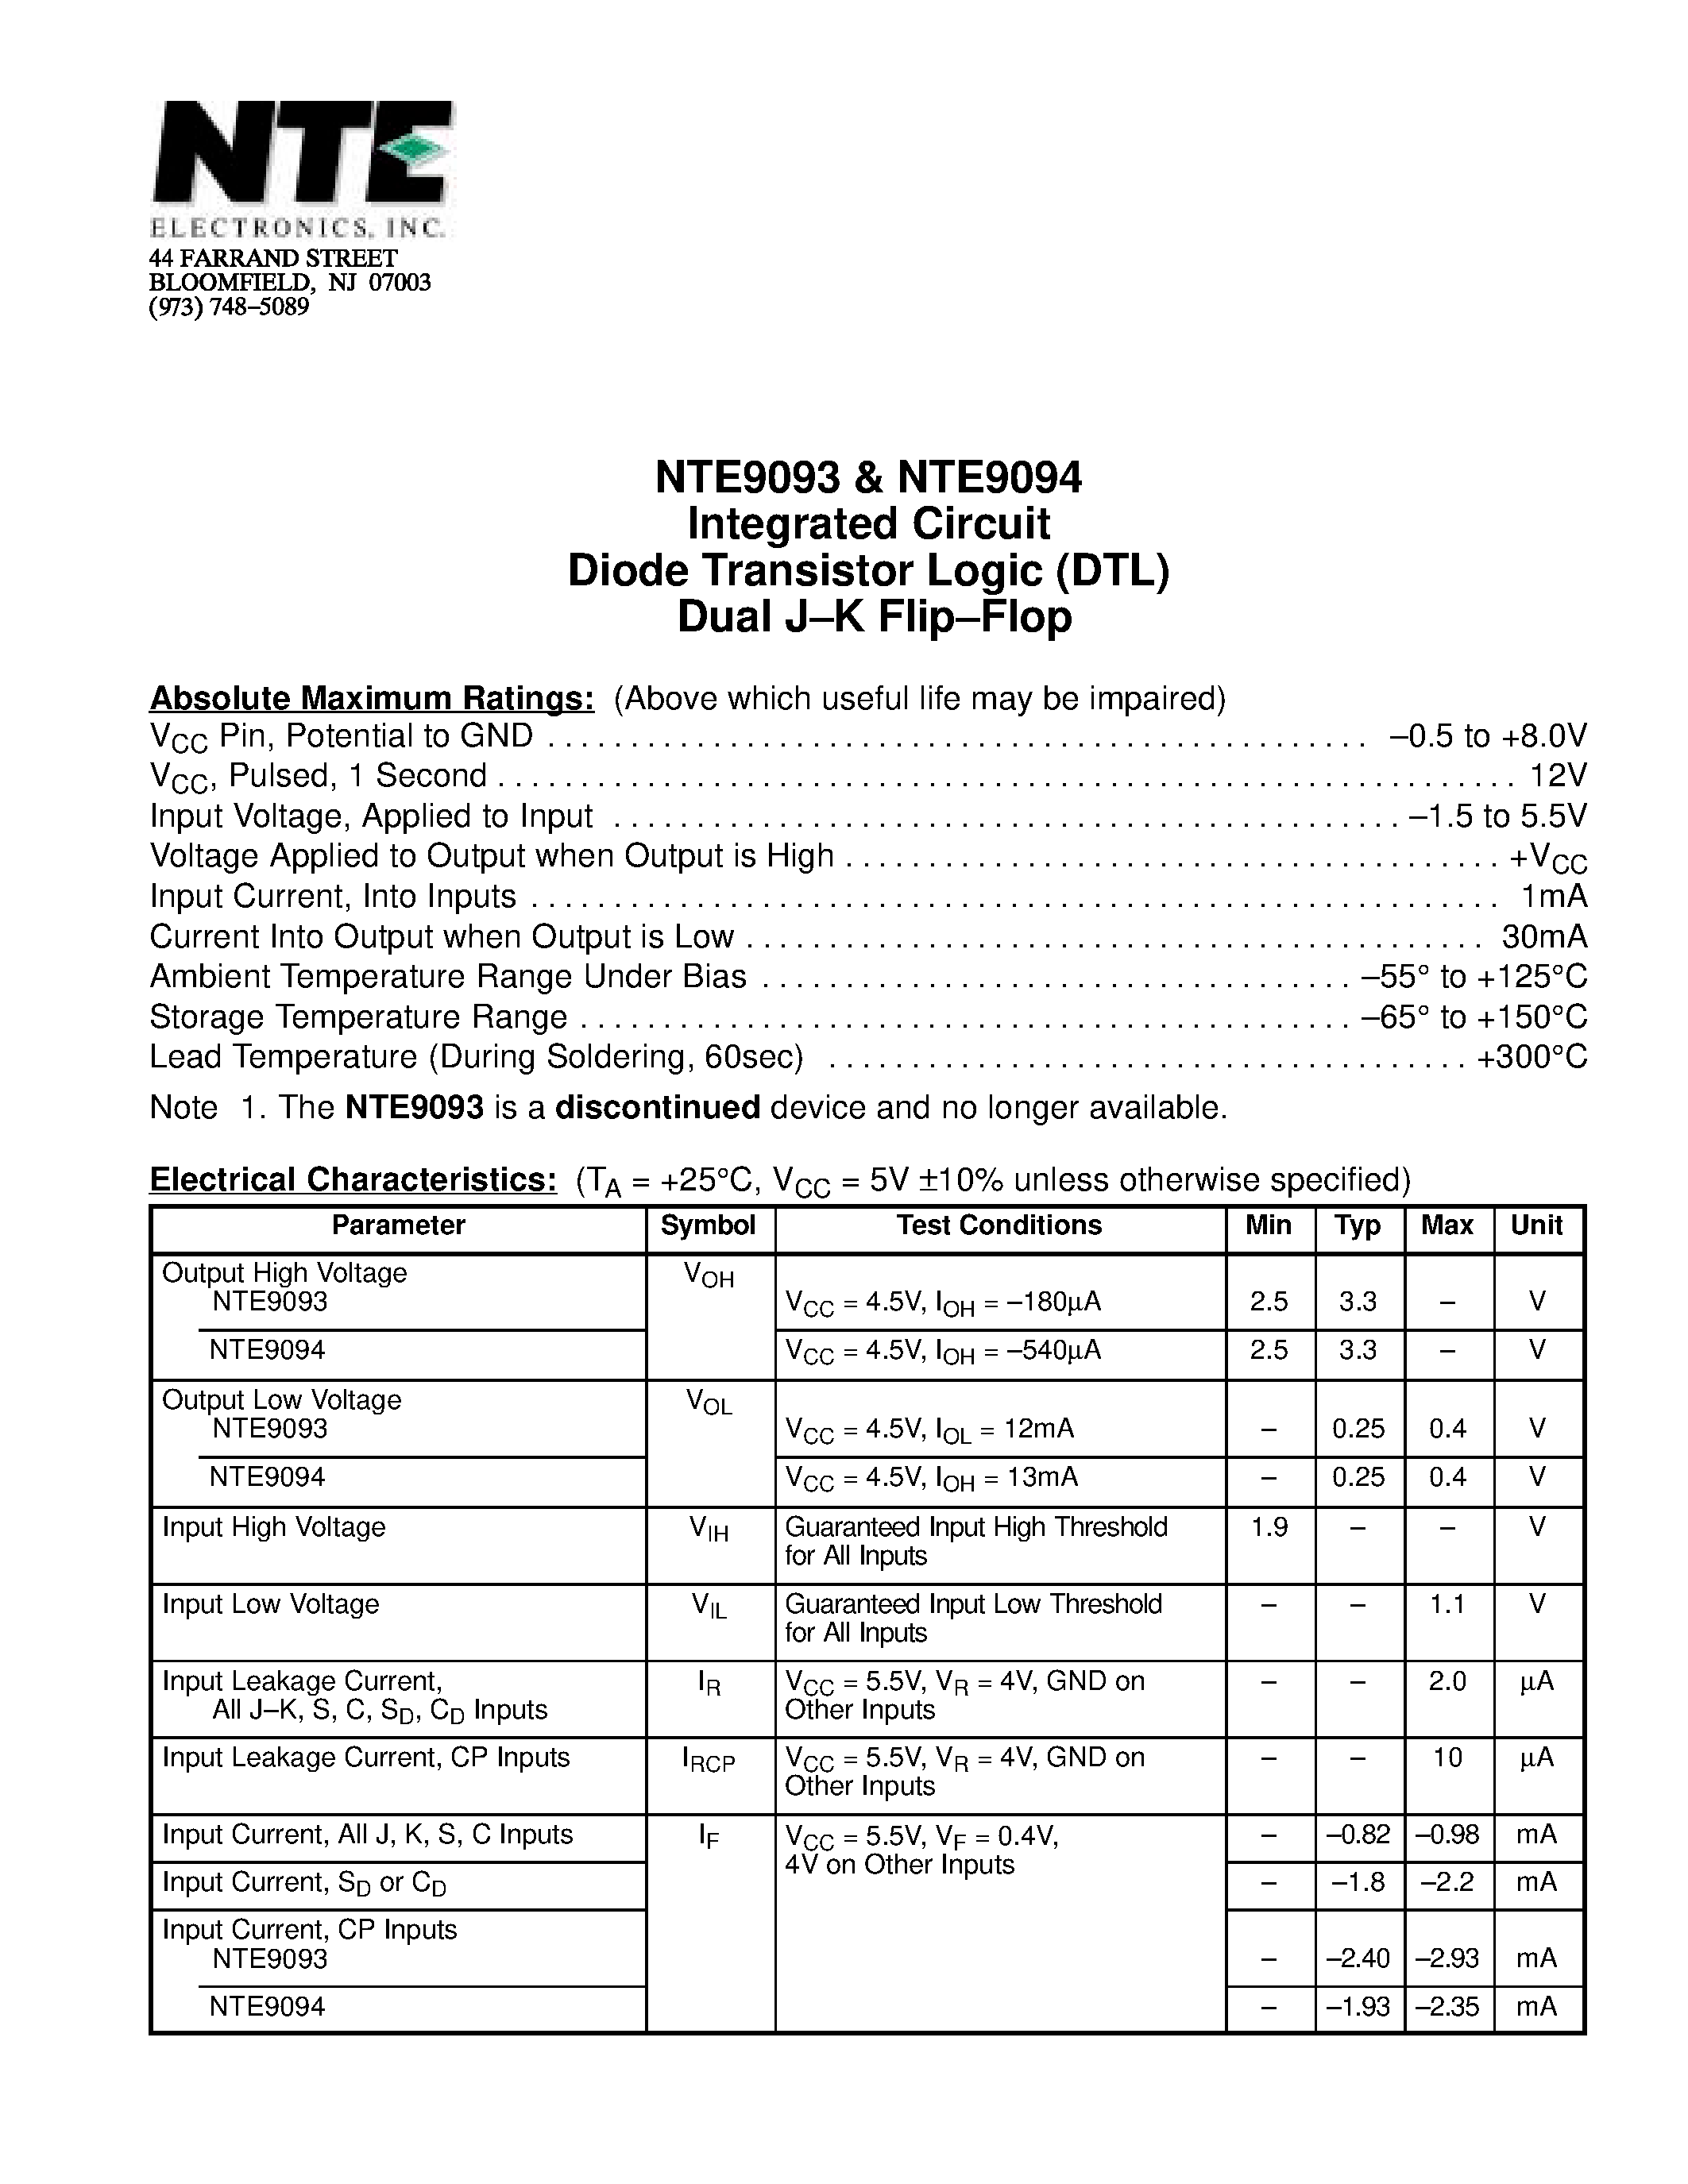 Datasheet NTE9093 - Integrated Circuit Diode Transistor Logic (DTL) Dual J-K Flip-Flop page 1